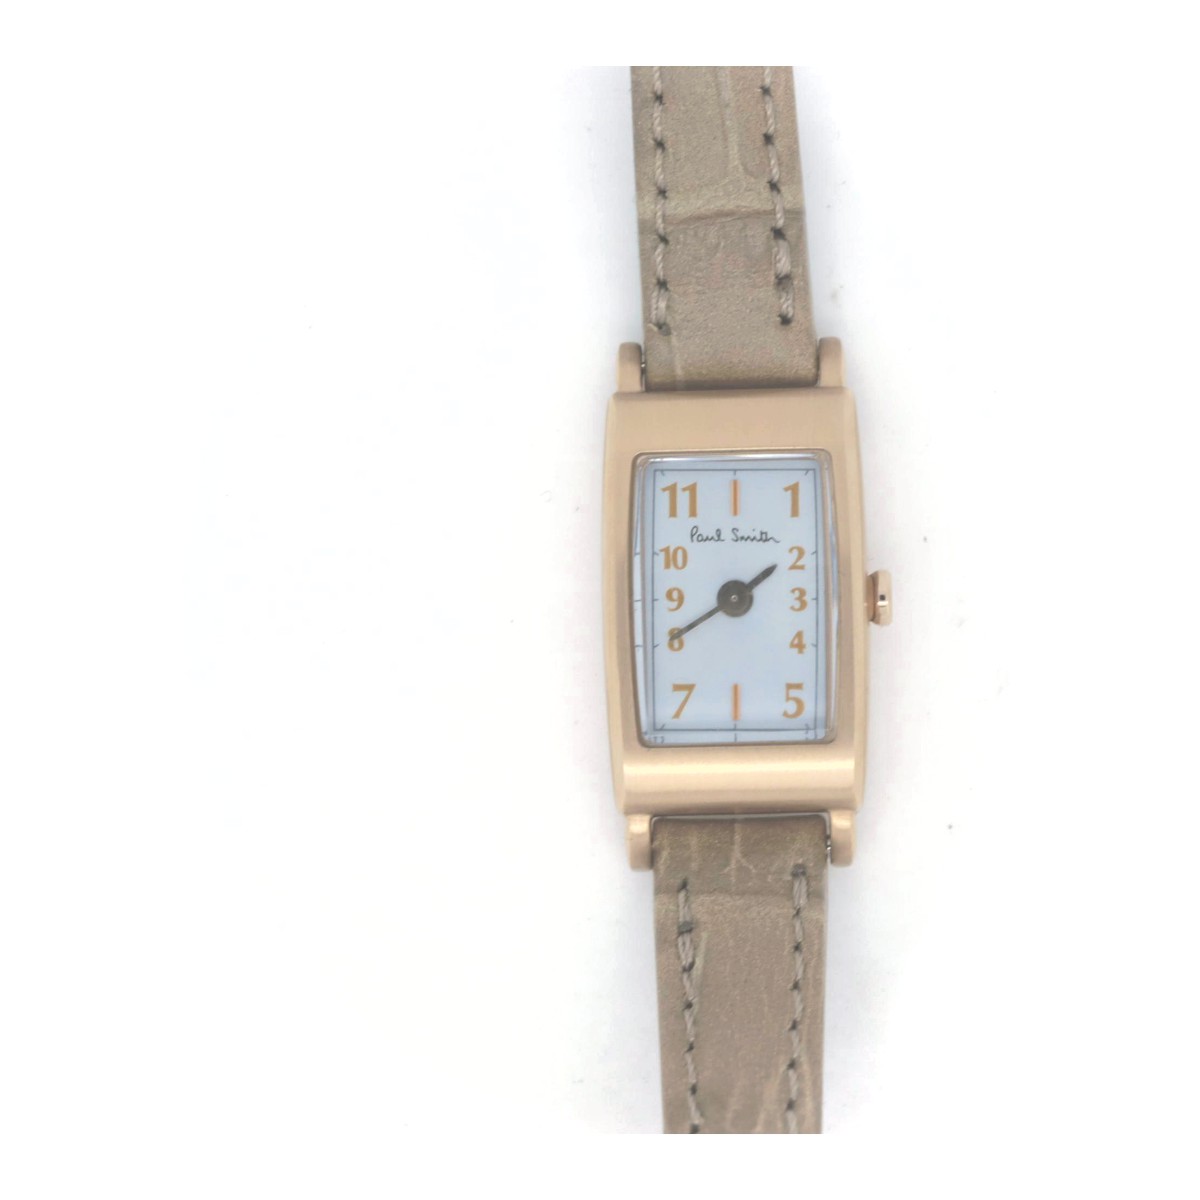 【中古】 ポールスミス BB2-062 リトルブリック レディース 腕時計 グレー ブラウン 質屋出品 【コンビニ受取対応商品】